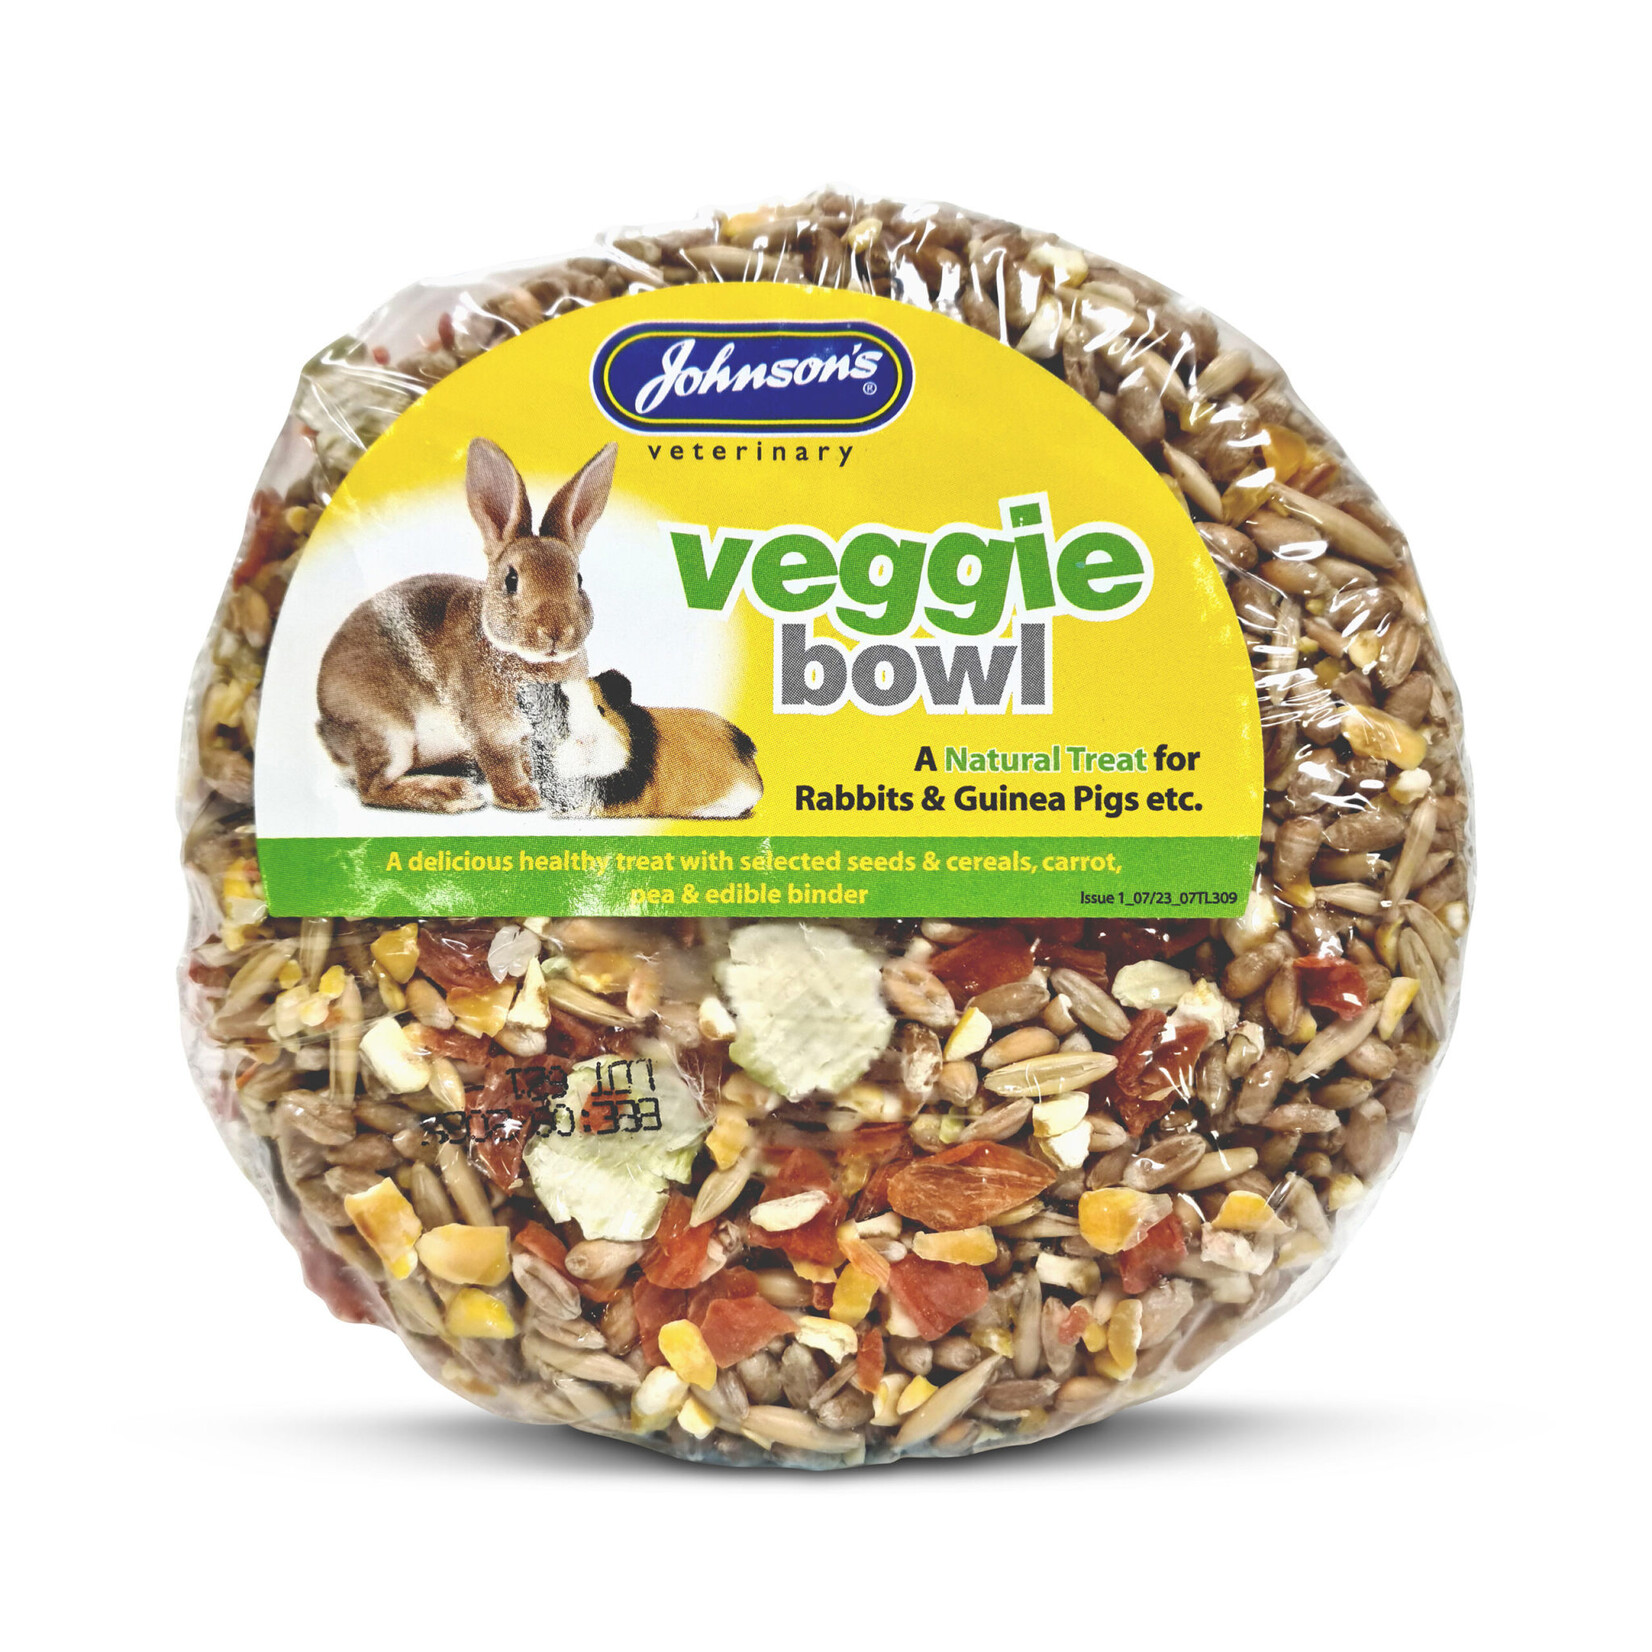 Johnson's Veterinary Veggie Bowl Treat for Rabbits & Guinea Pigs, 150g